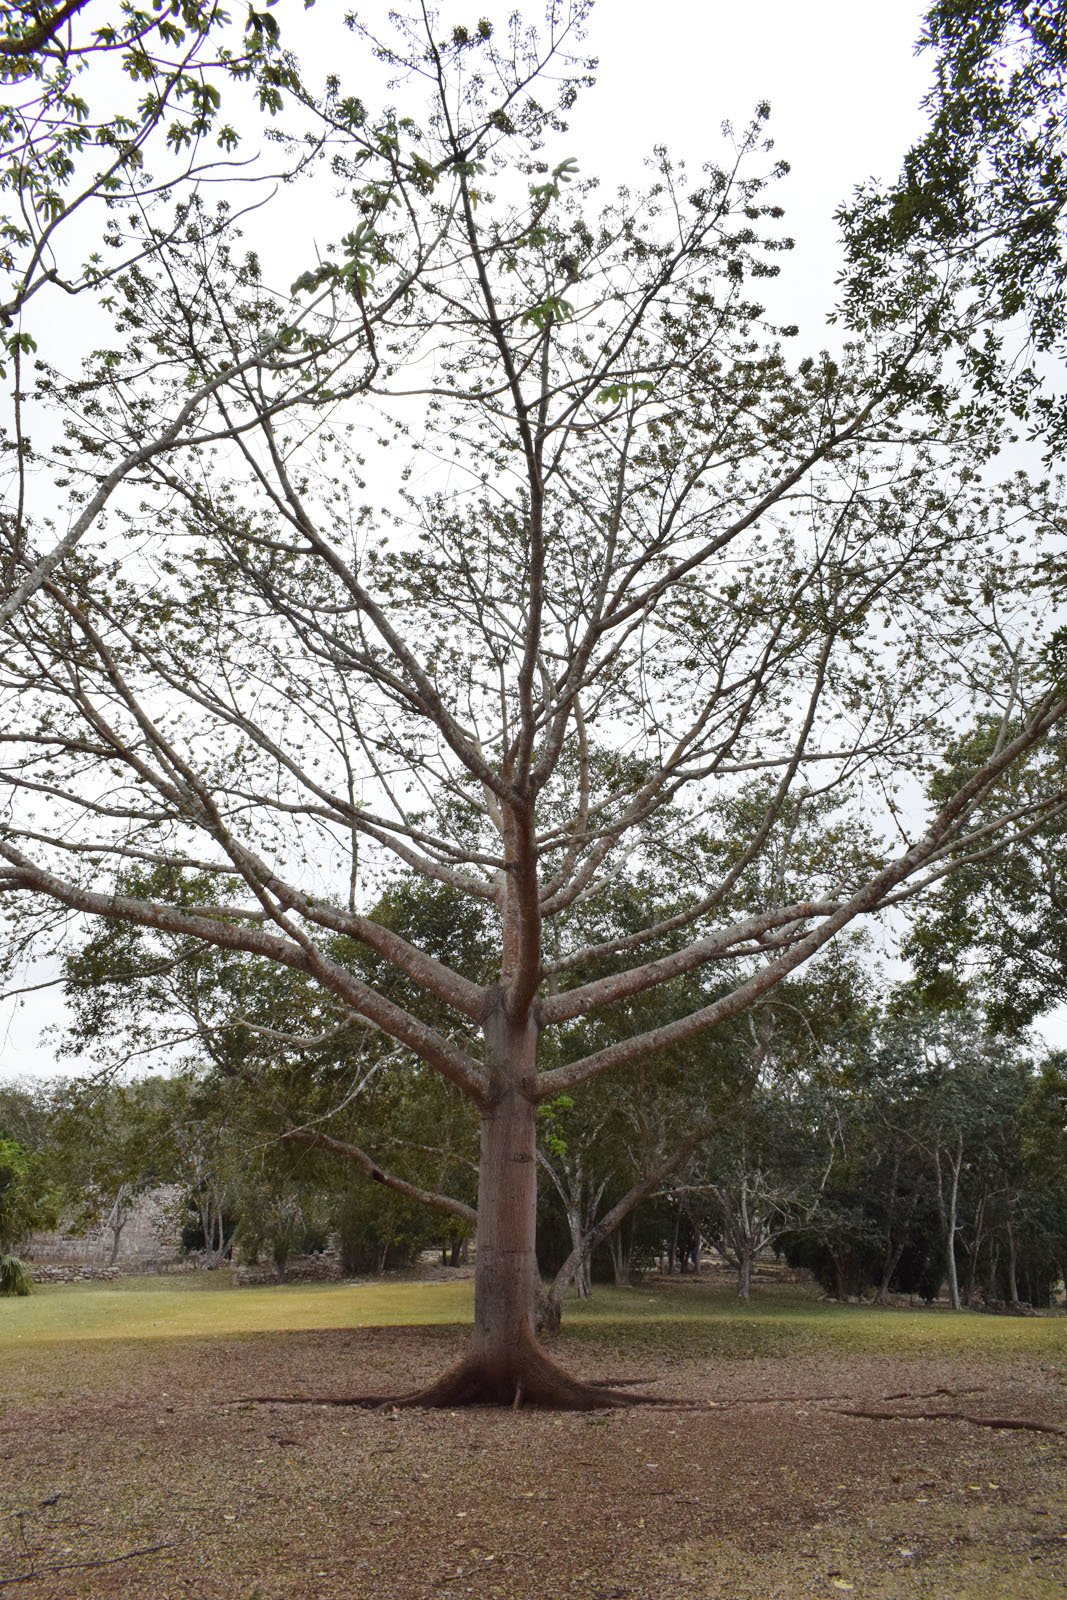 Ceiba trees dot the entrance of Uxmal.